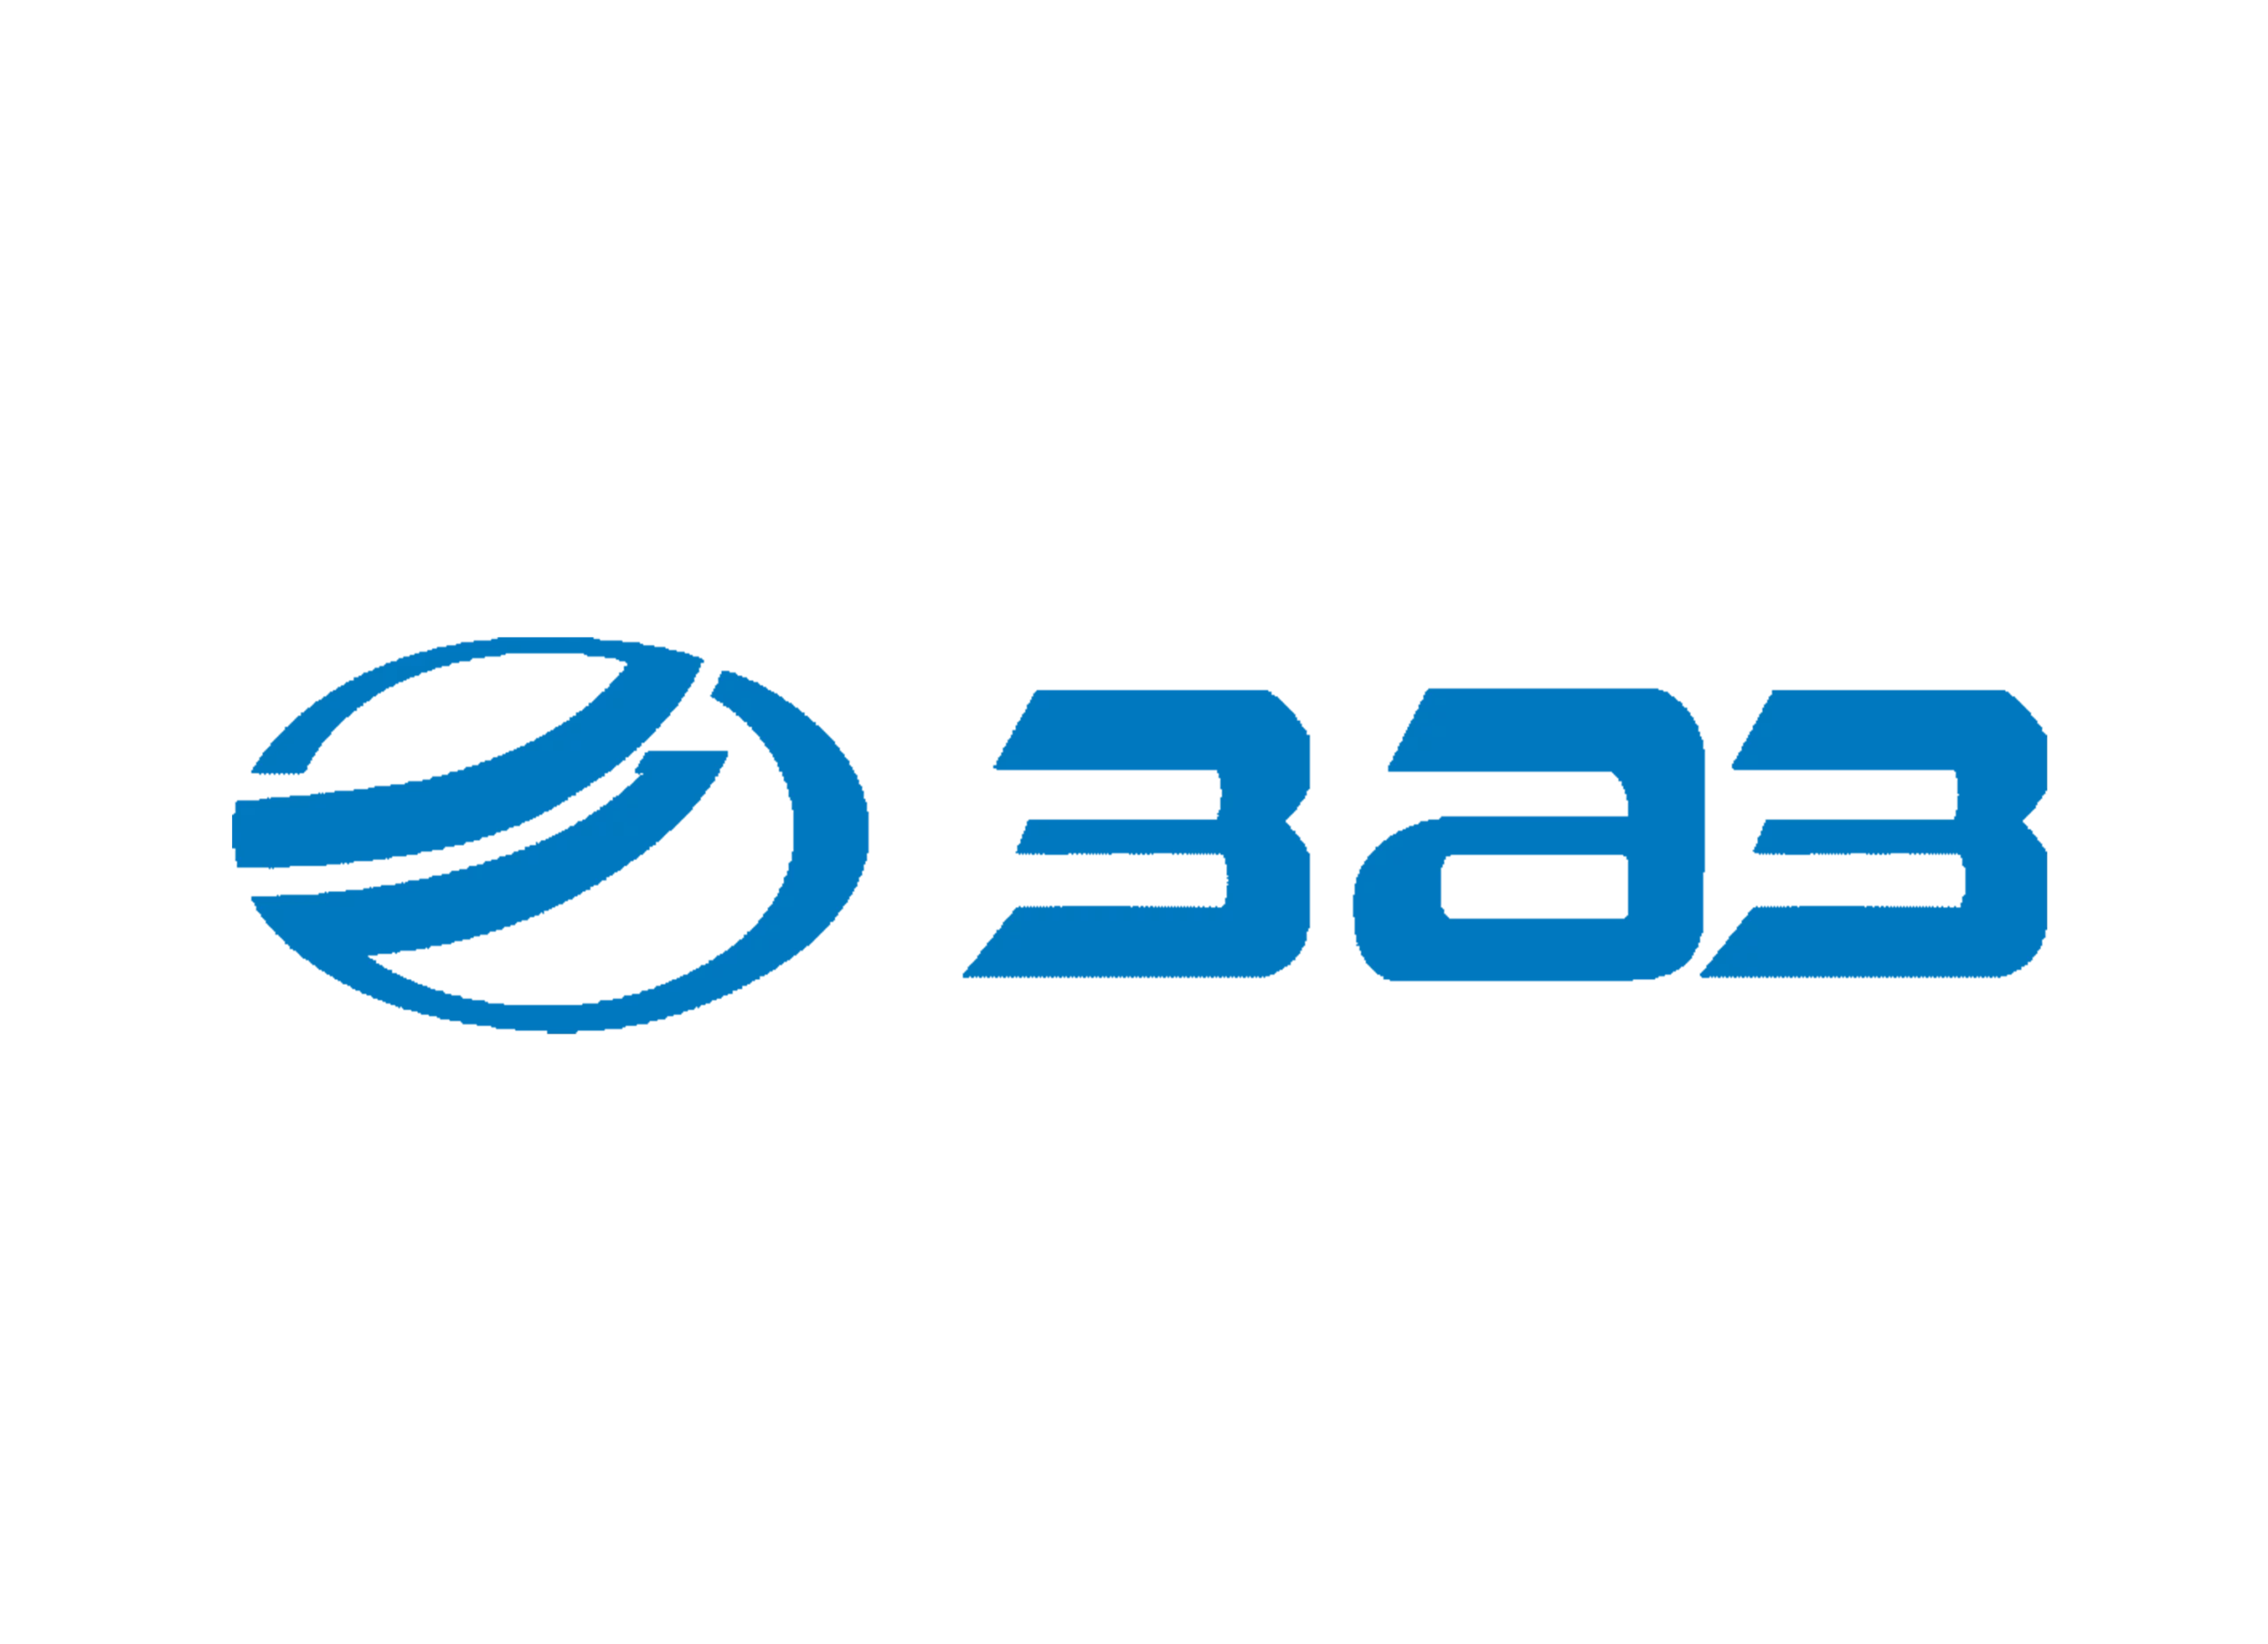 ZAZ logo 1997-2012